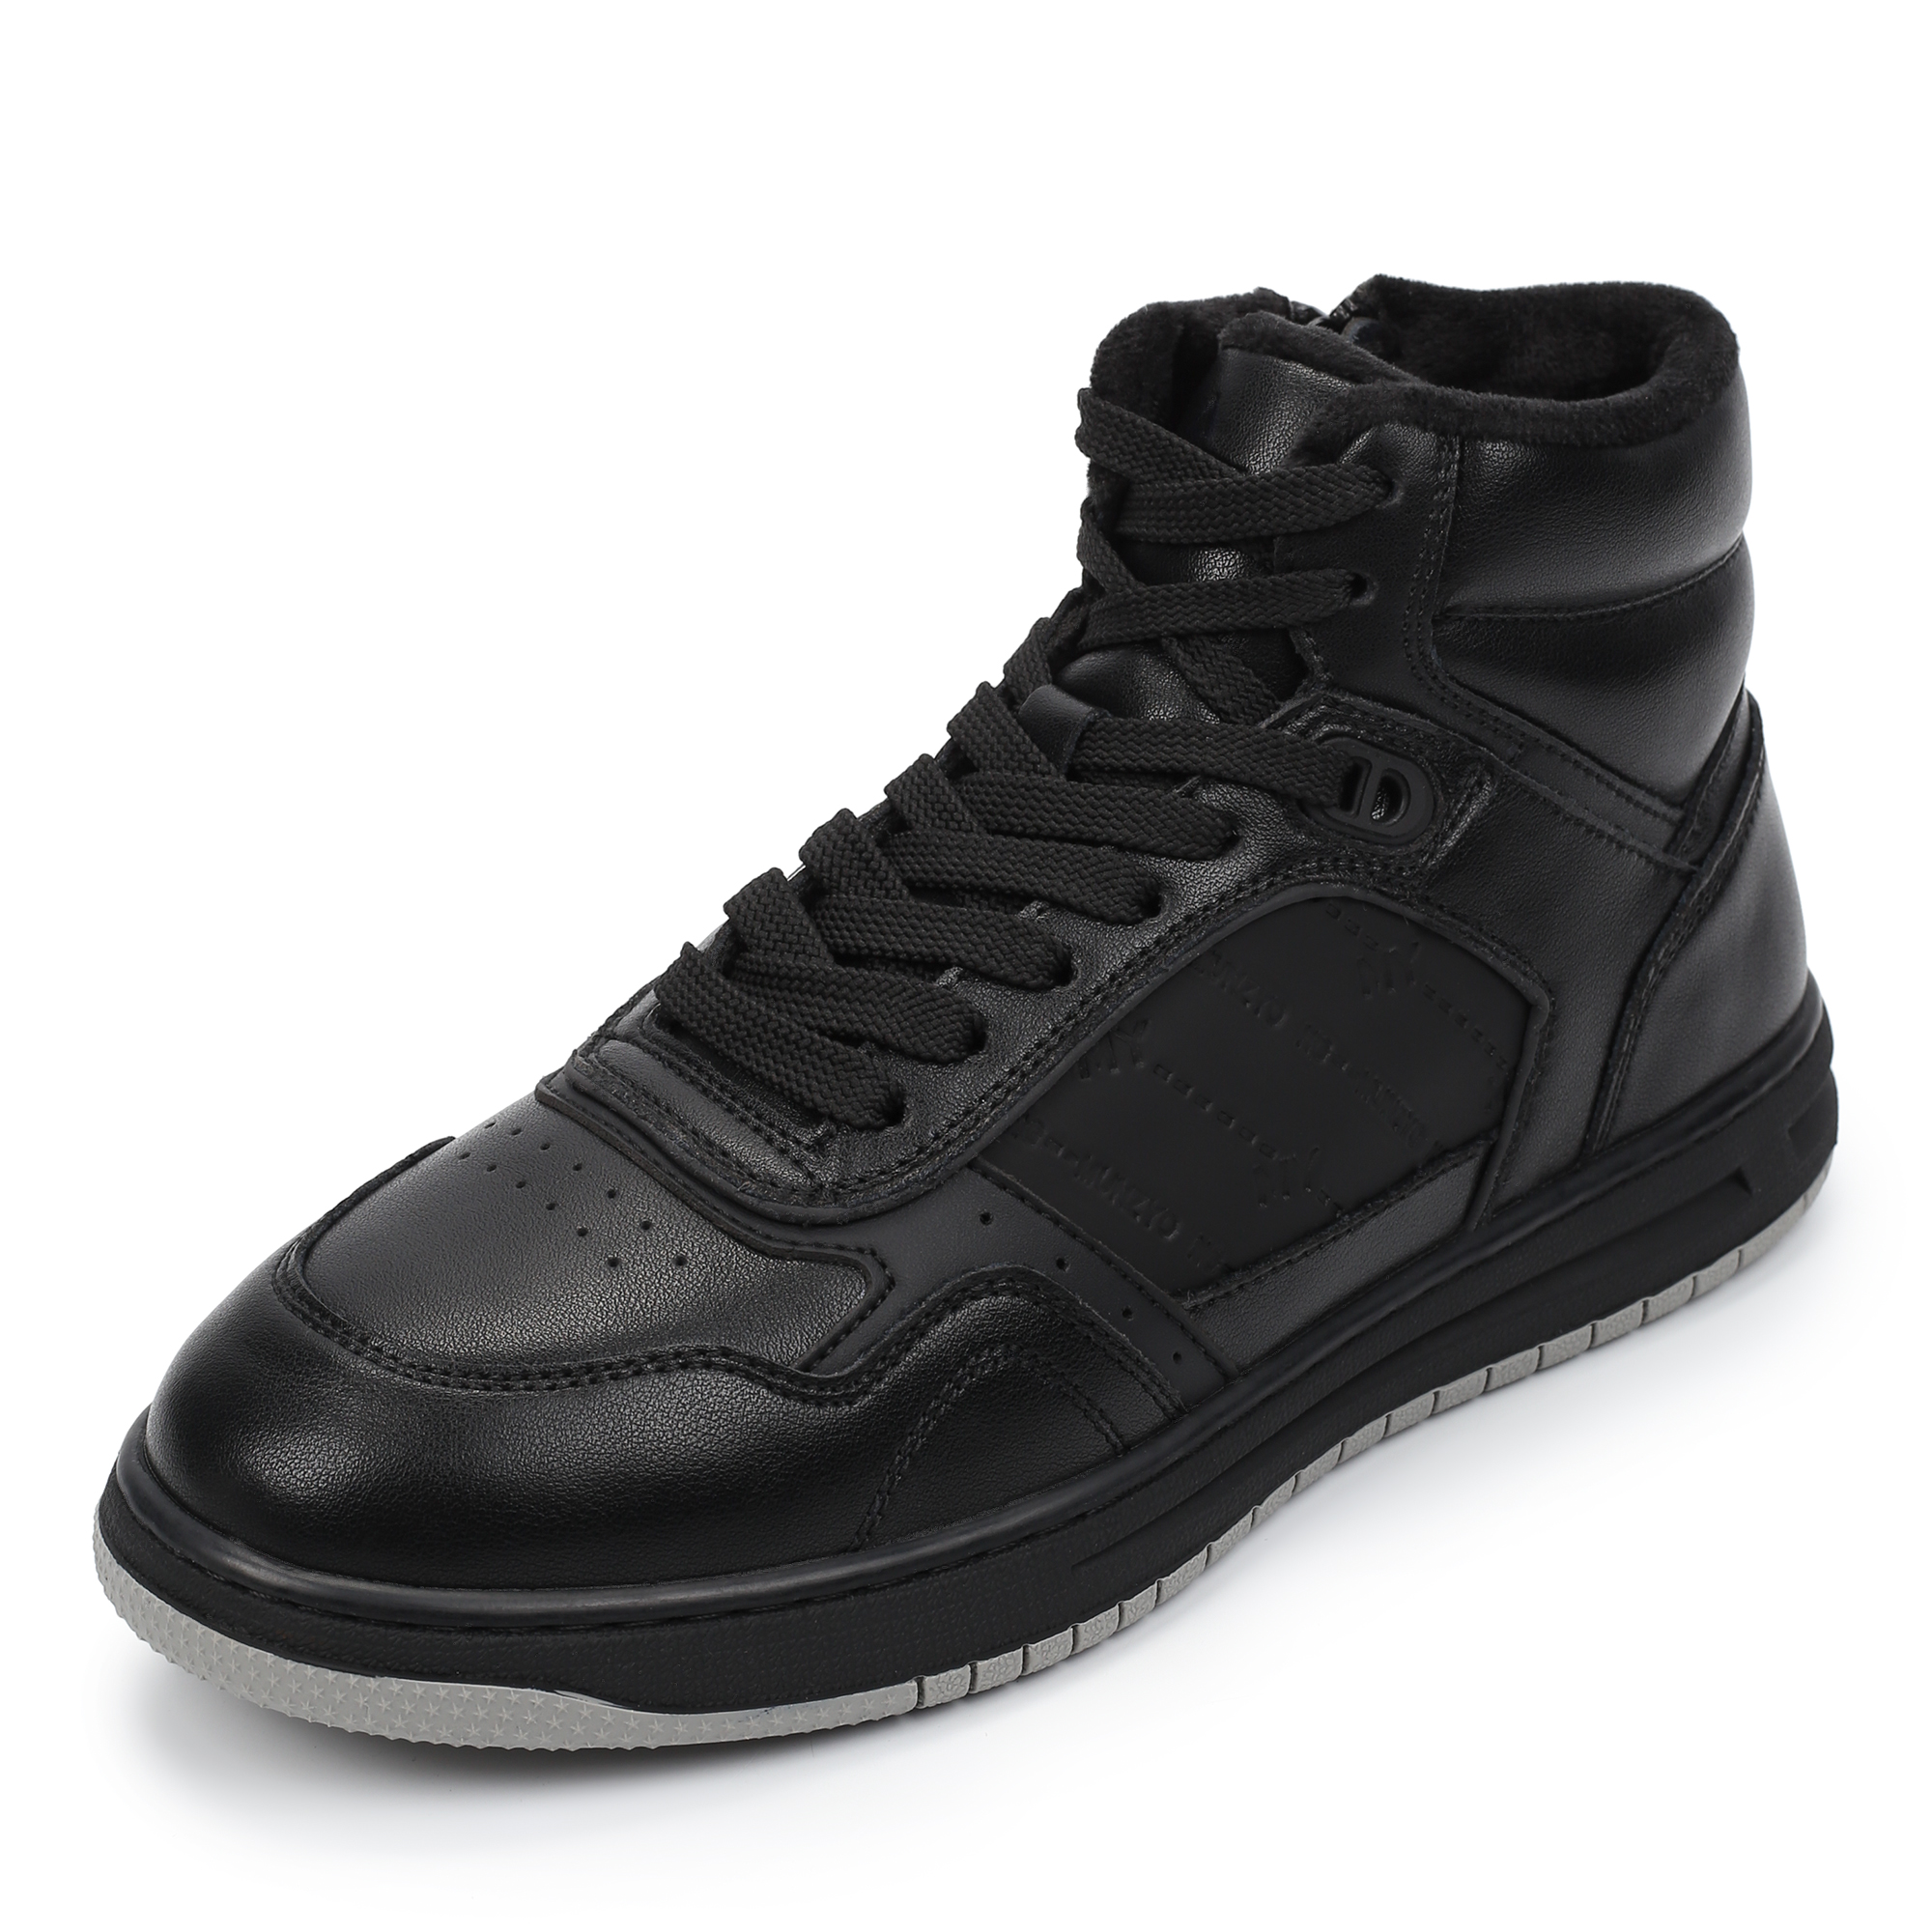 Ботинки MUNZ YOUNG 098-3451A-2602, цвет черный, размер 38 - фото 2